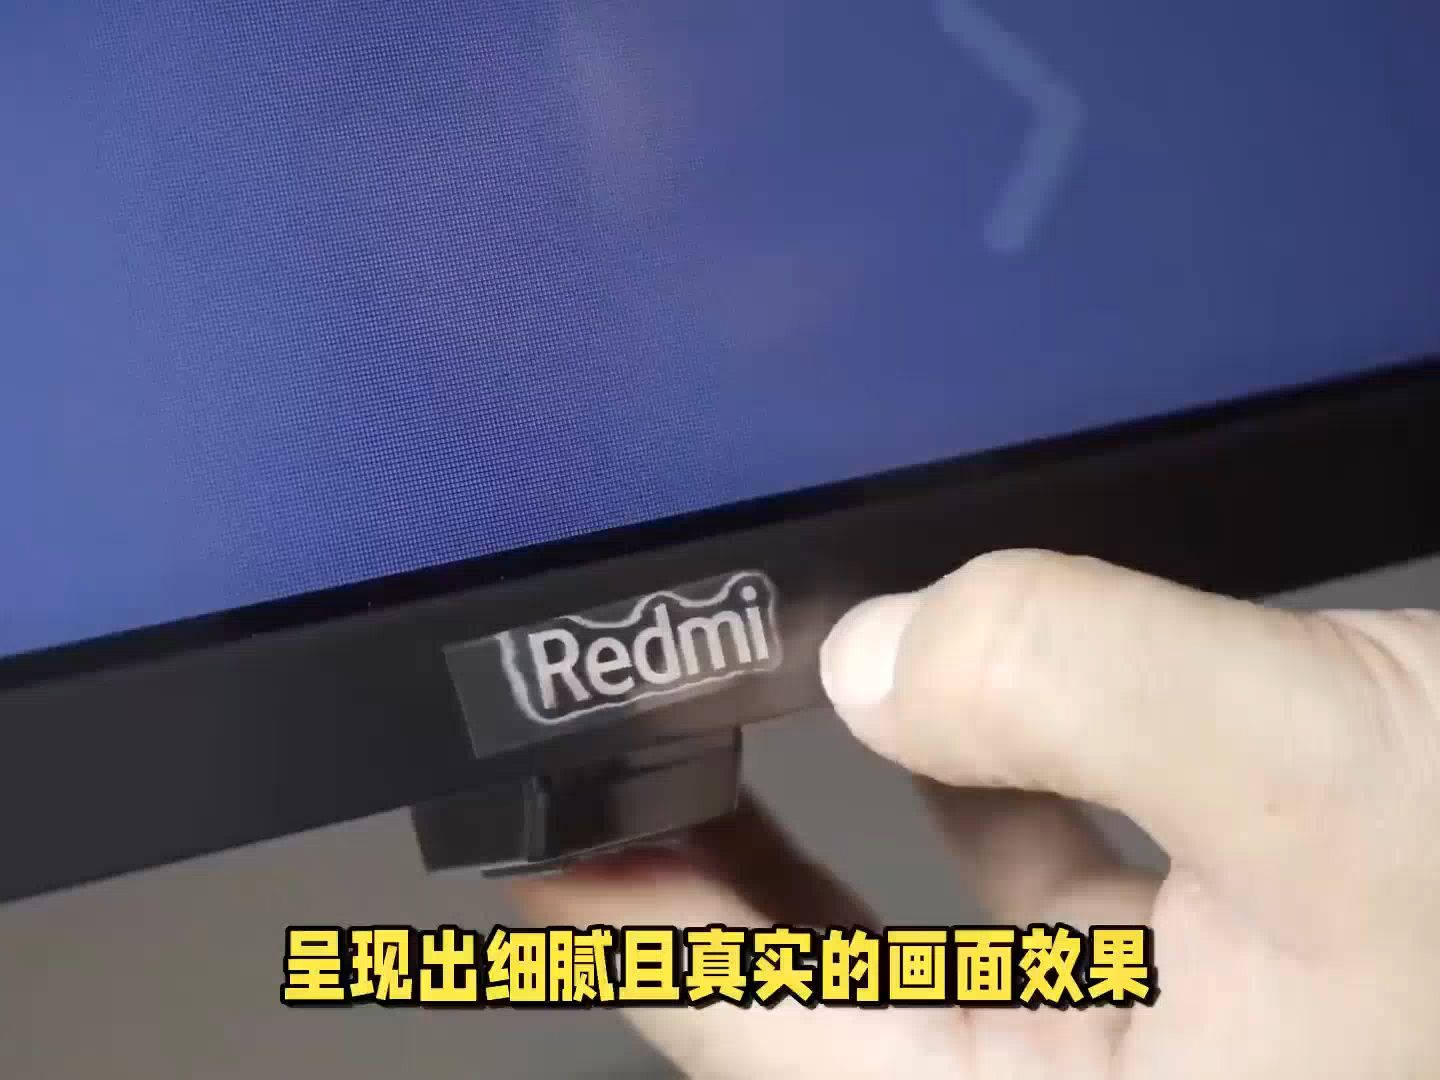 redmi max86 外接音箱图片